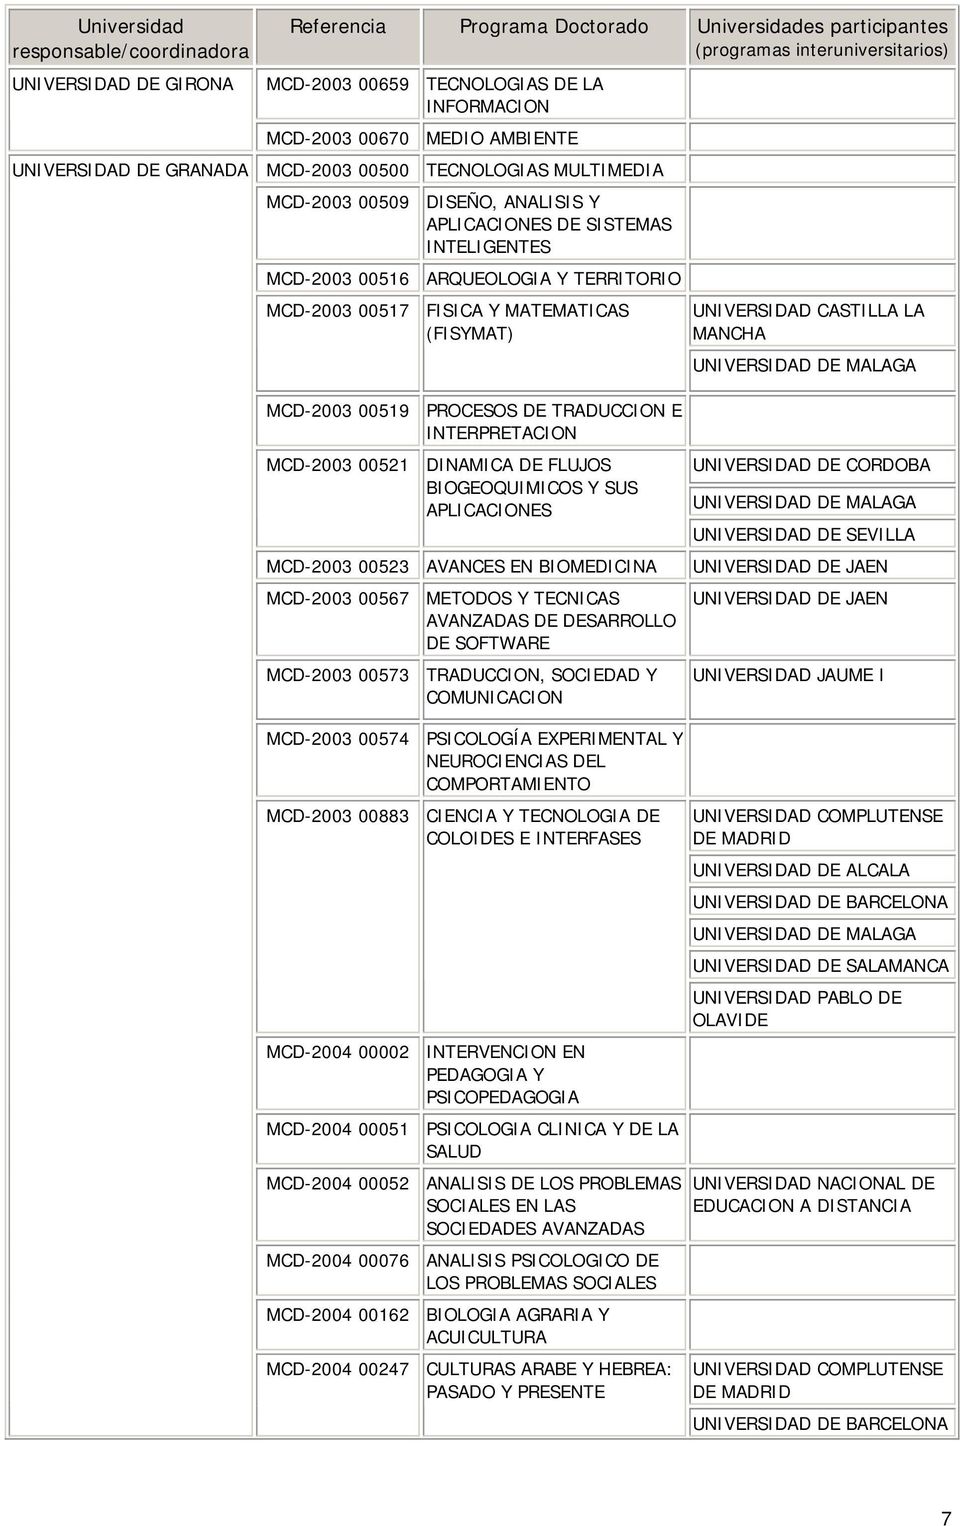 DINAMICA DE FLUJOS BIOGEOQUIMICOS Y SUS APLICACIONES MCD-2003 00523 AVANCES EN BIOMEDICINA MCD-2003 00567 METODOS Y TECNICAS AVANZADAS DE DESARROLLO DE SOFTWARE MCD-2003 00573 TRADUCCION, SOCIEDAD Y